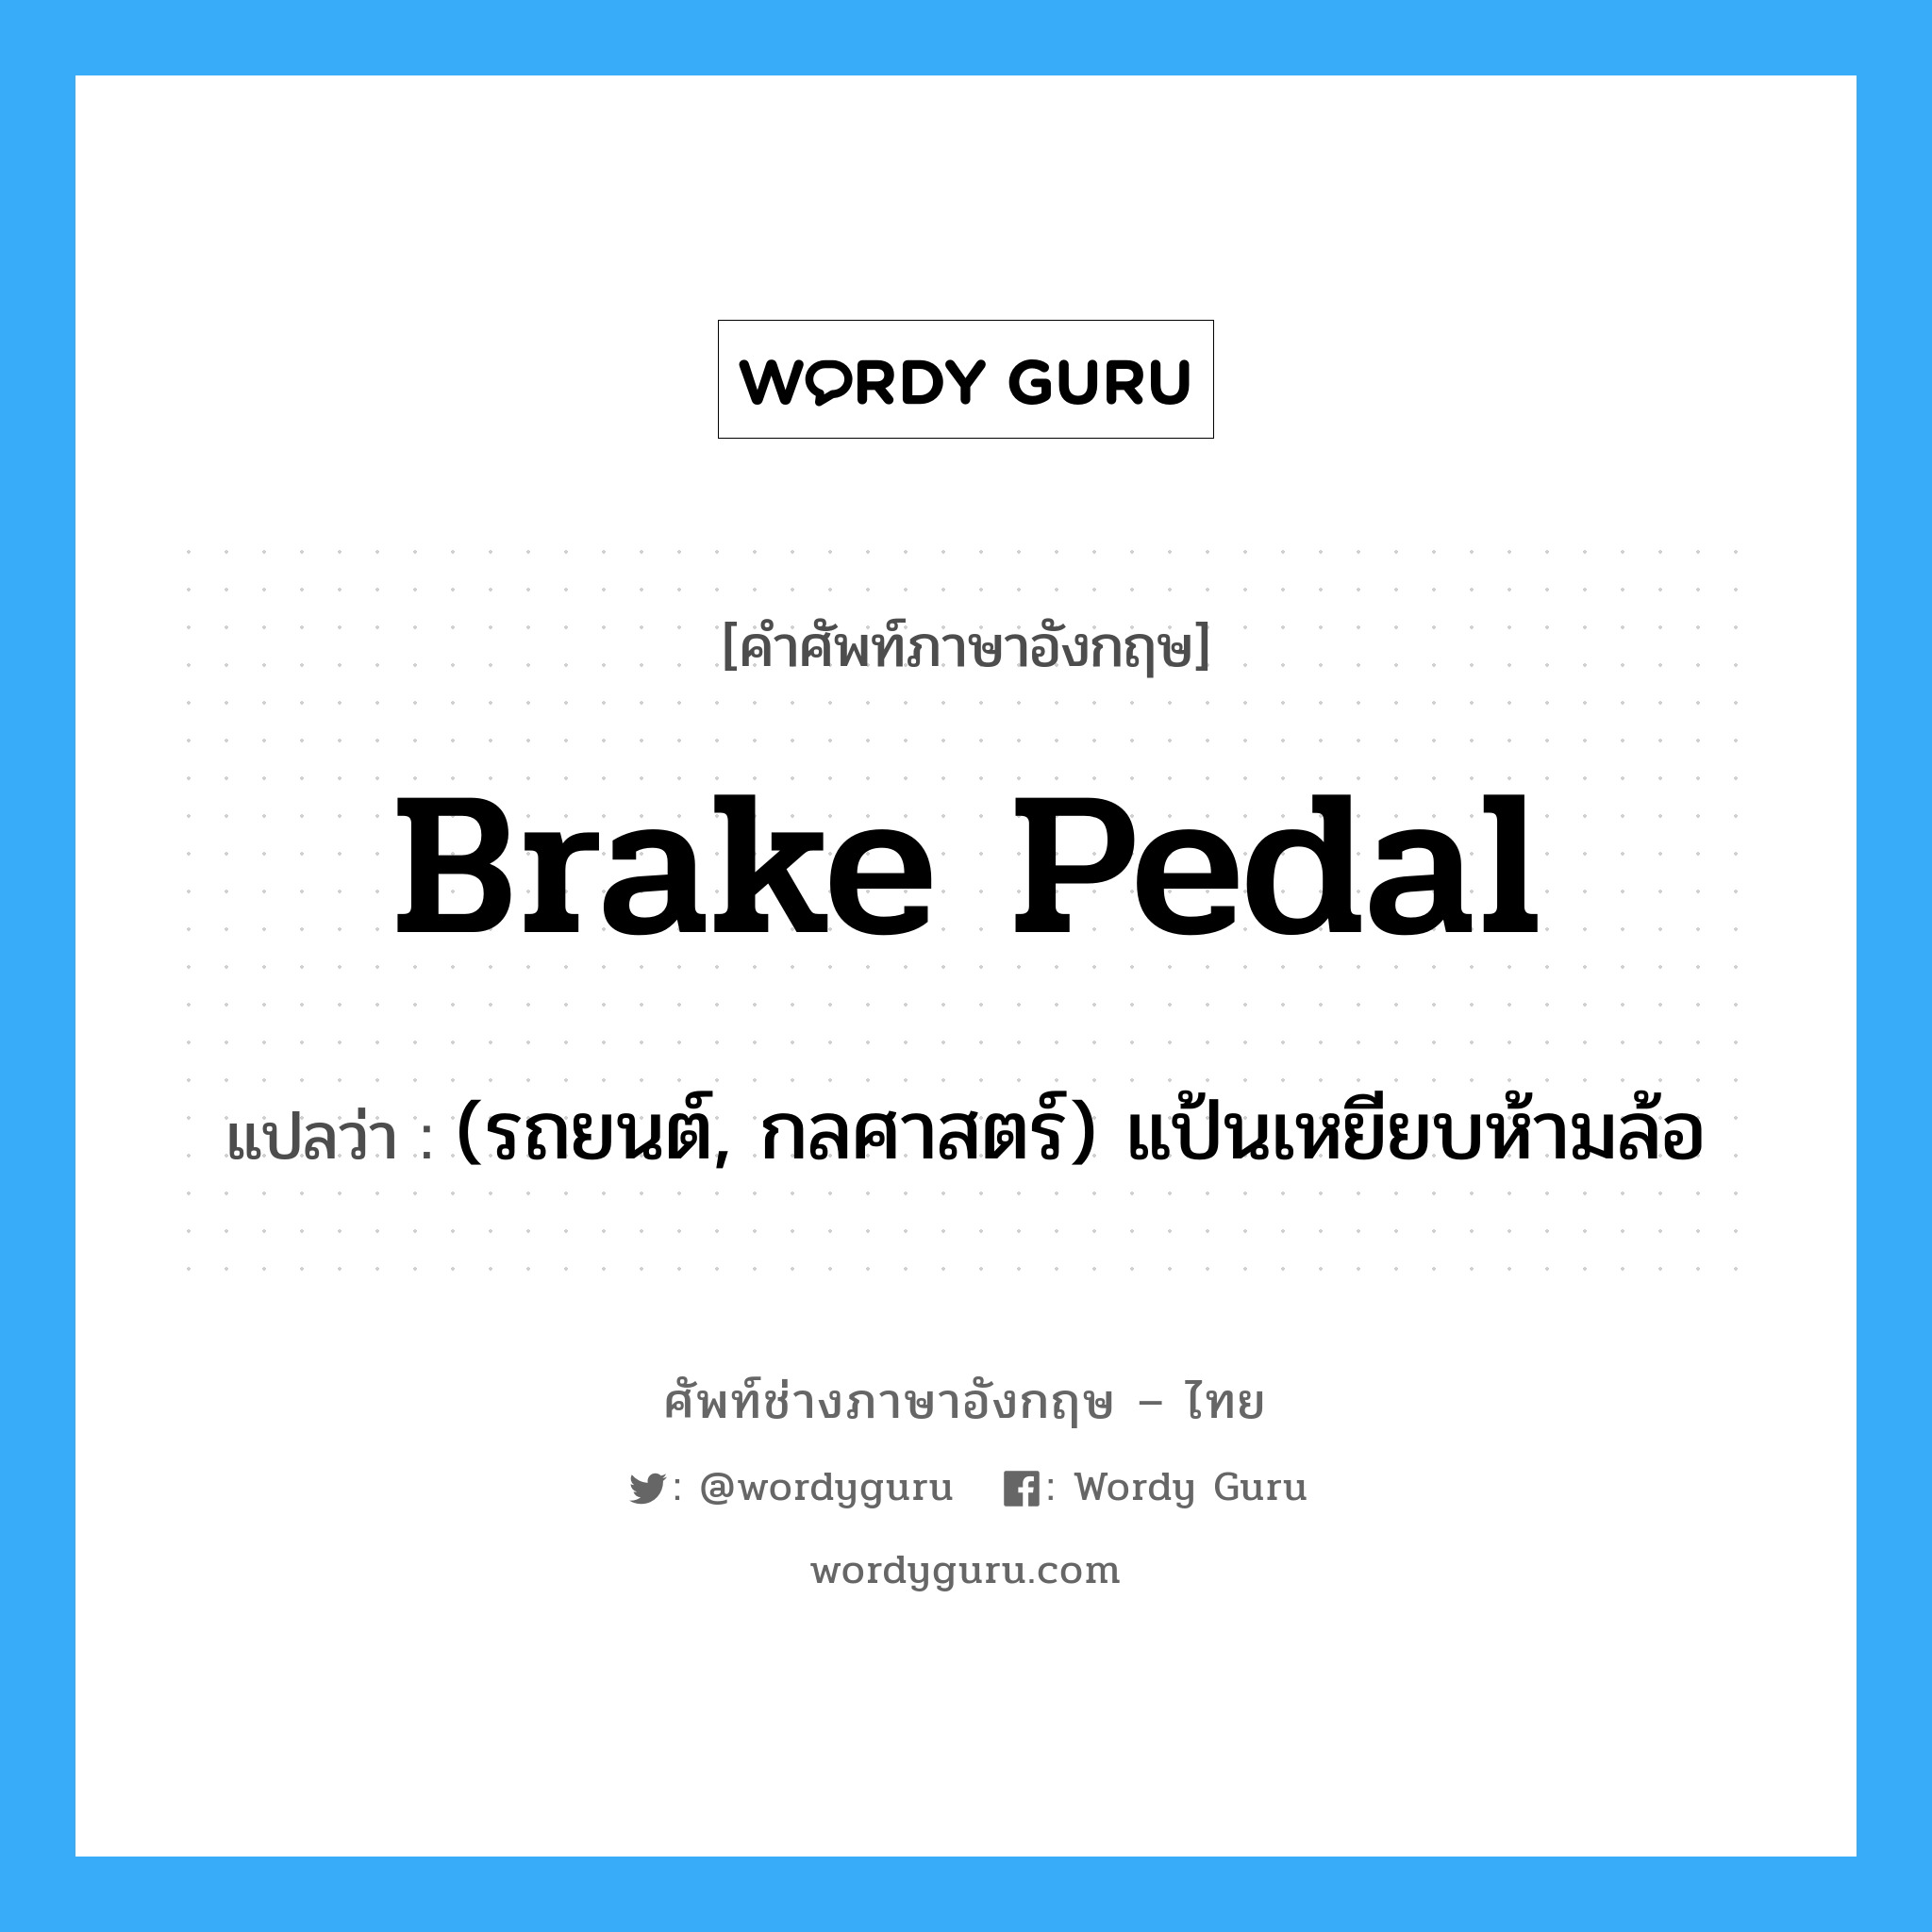 (รถยนต์, กลศาสตร์) แป้นเหยียบห้ามล้อ ภาษาอังกฤษ?, คำศัพท์ช่างภาษาอังกฤษ - ไทย (รถยนต์, กลศาสตร์) แป้นเหยียบห้ามล้อ คำศัพท์ภาษาอังกฤษ (รถยนต์, กลศาสตร์) แป้นเหยียบห้ามล้อ แปลว่า brake pedal